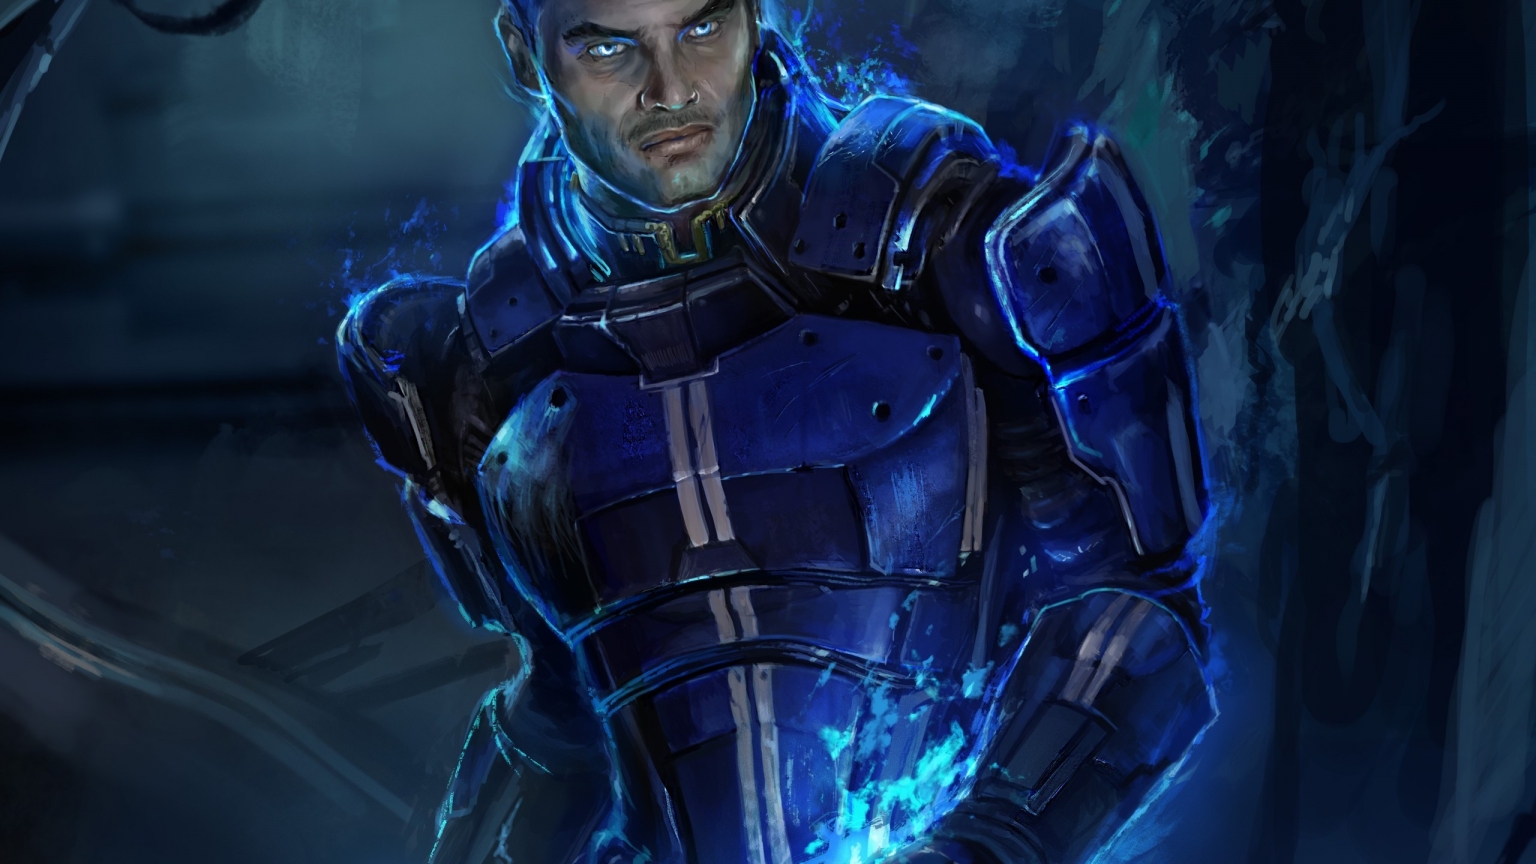 Kaidan Alenko Mass Effect 3 for 1536 x 864 HDTV resolution